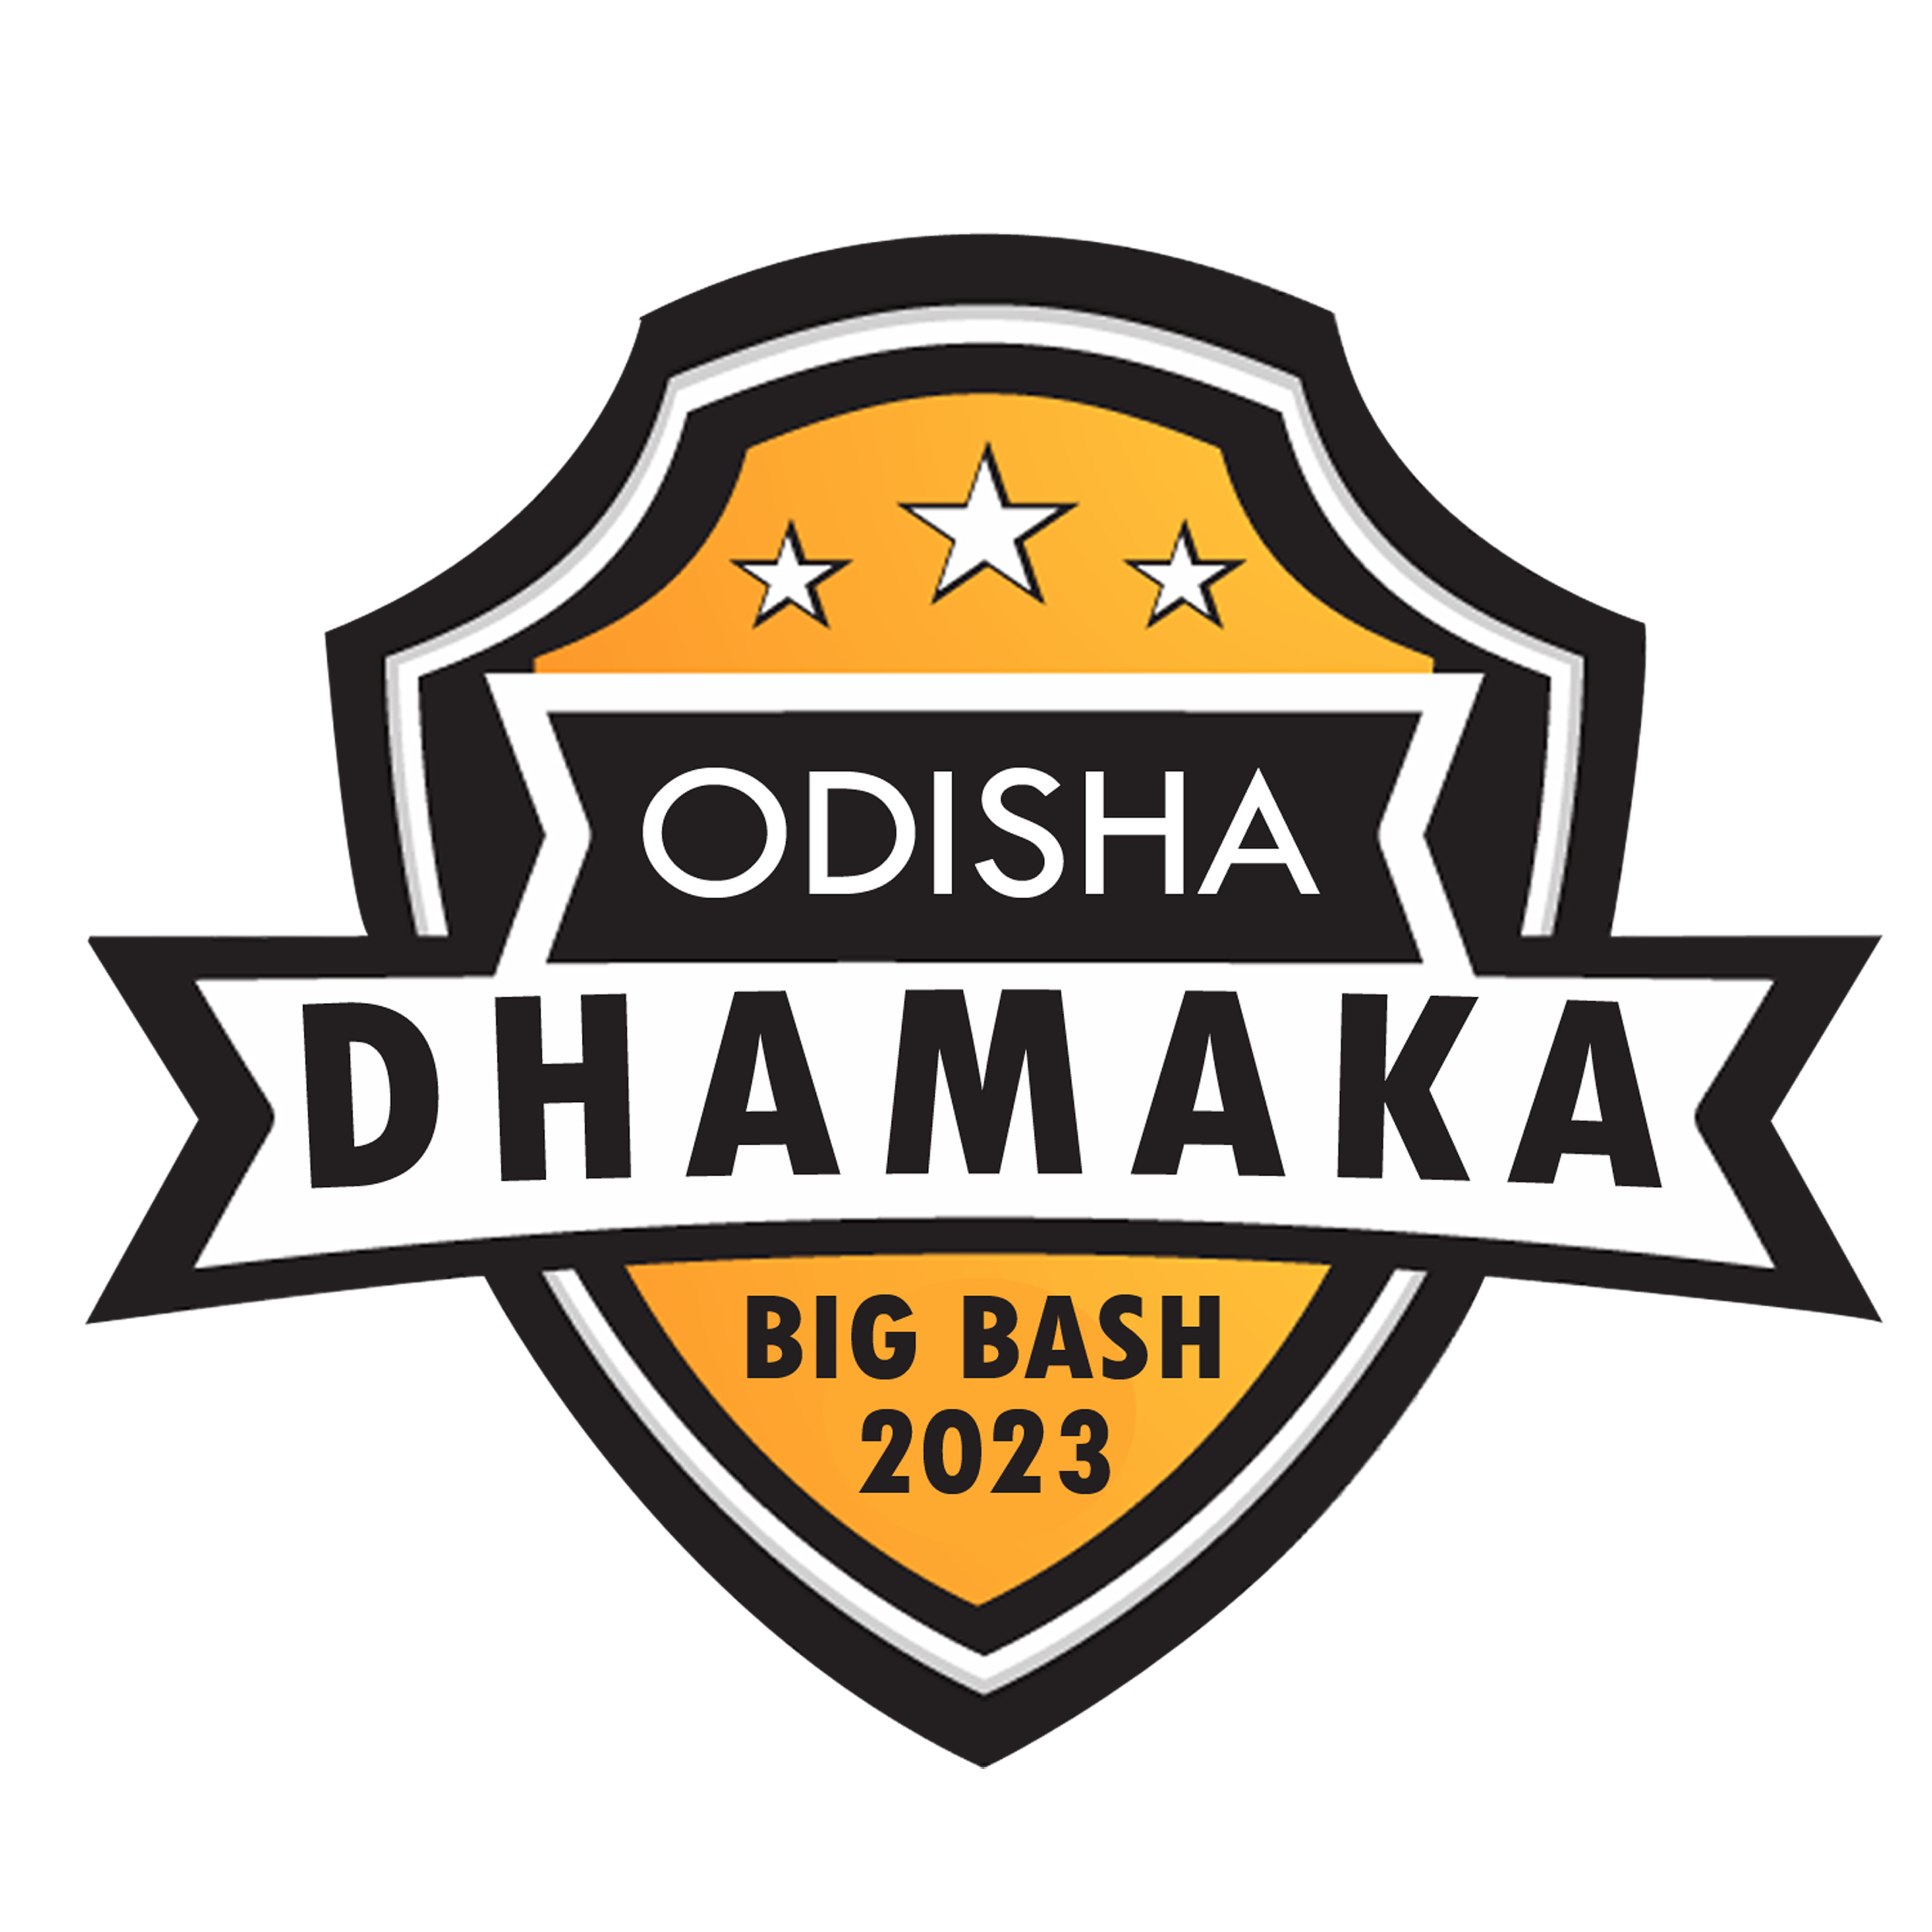 ODISHA DHAMAKA BIG BASH 2023